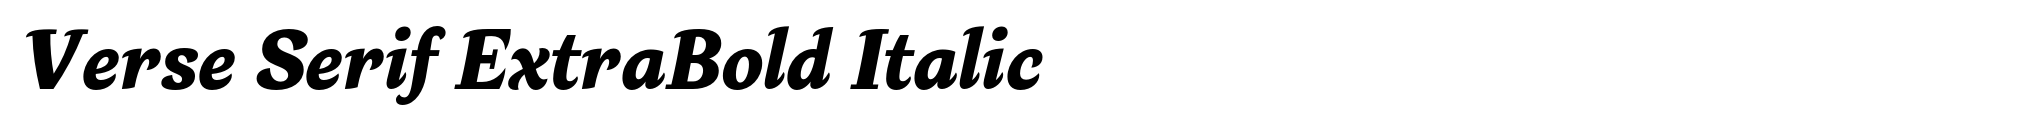 Verse Serif ExtraBold Italic image